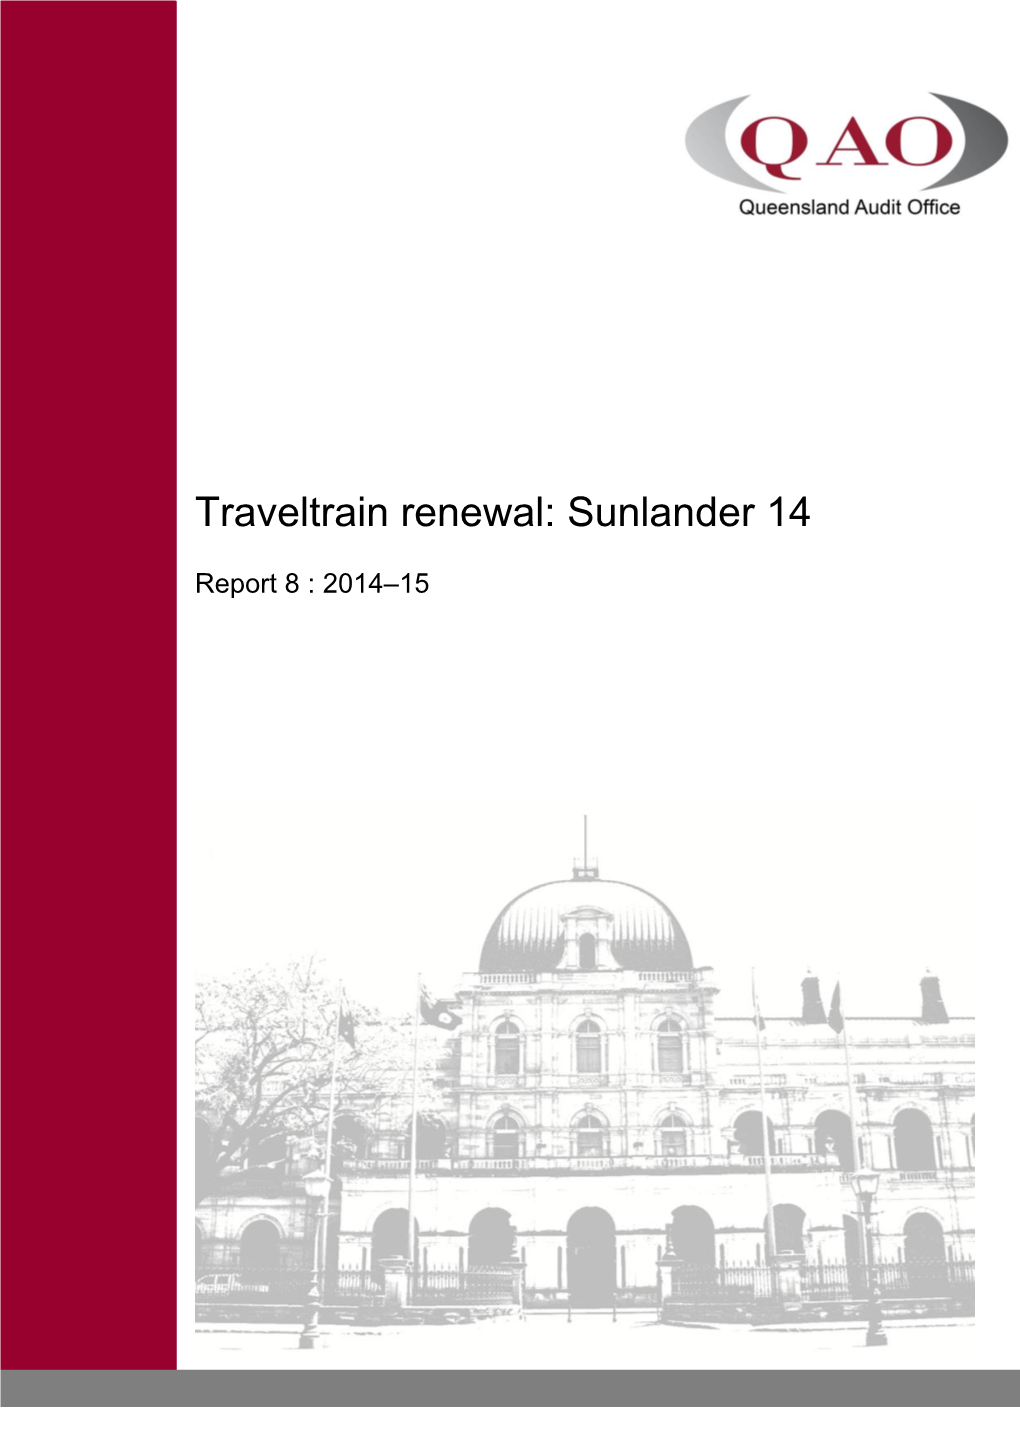 Traveltrain Renewal: Sunlander 14